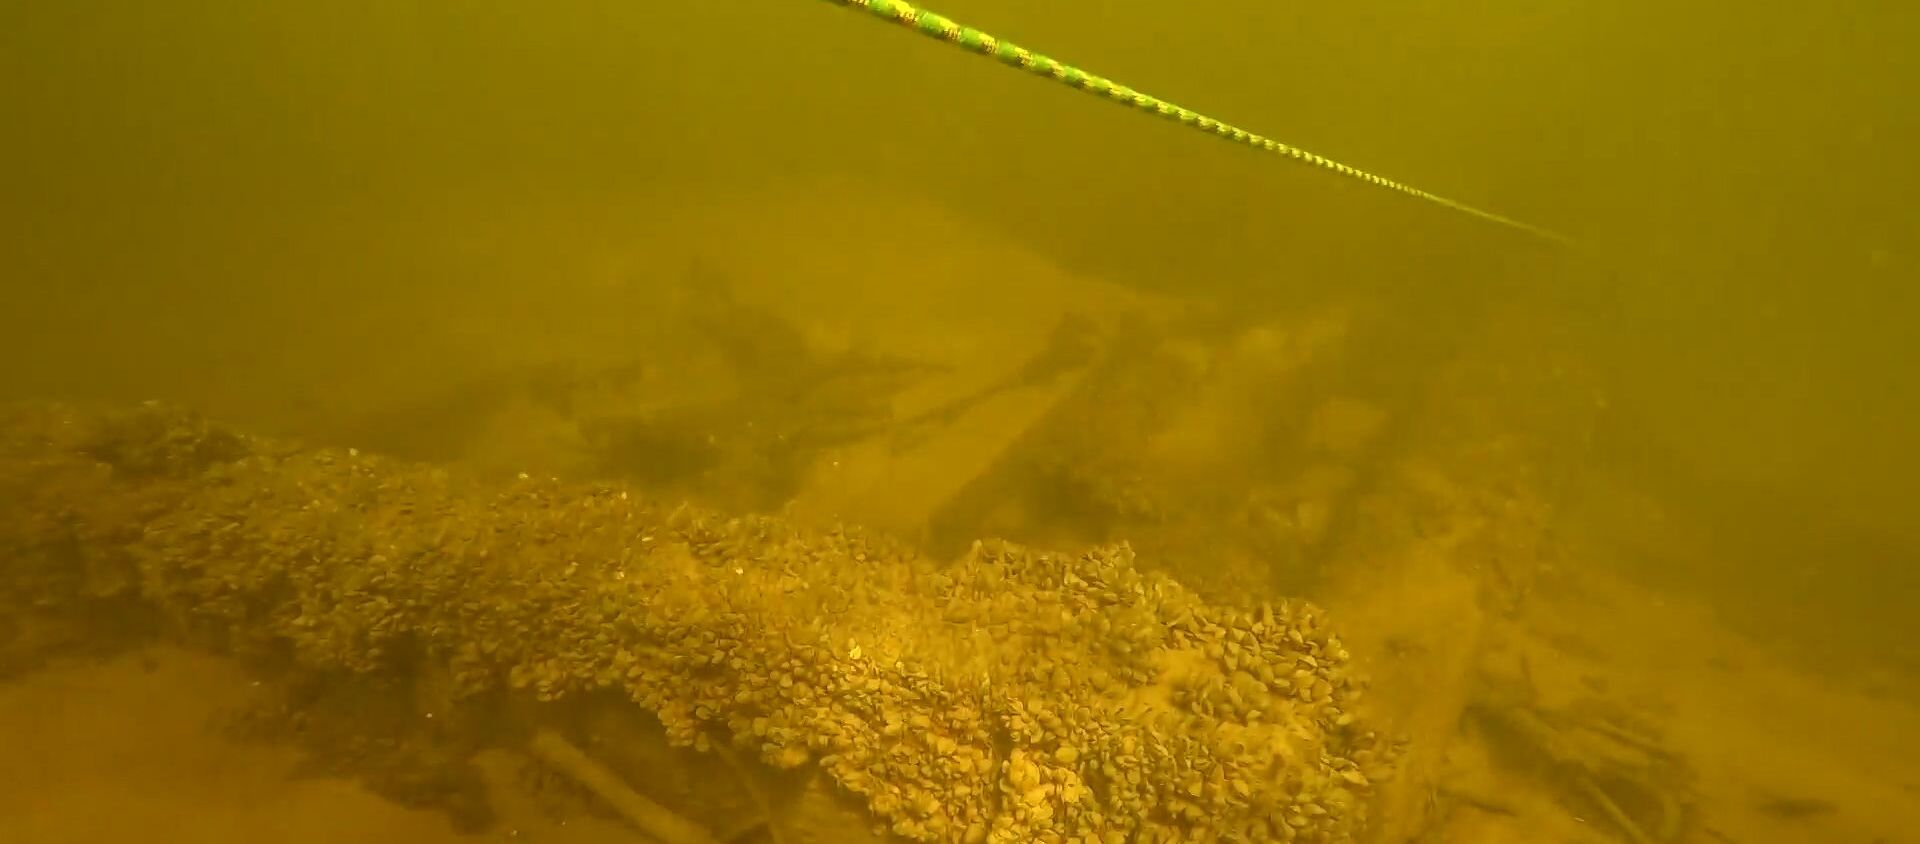 Археологи нашли на дне Волги затонувшее средневековое судно - видео - Sputnik Узбекистан, 1920, 26.10.2019